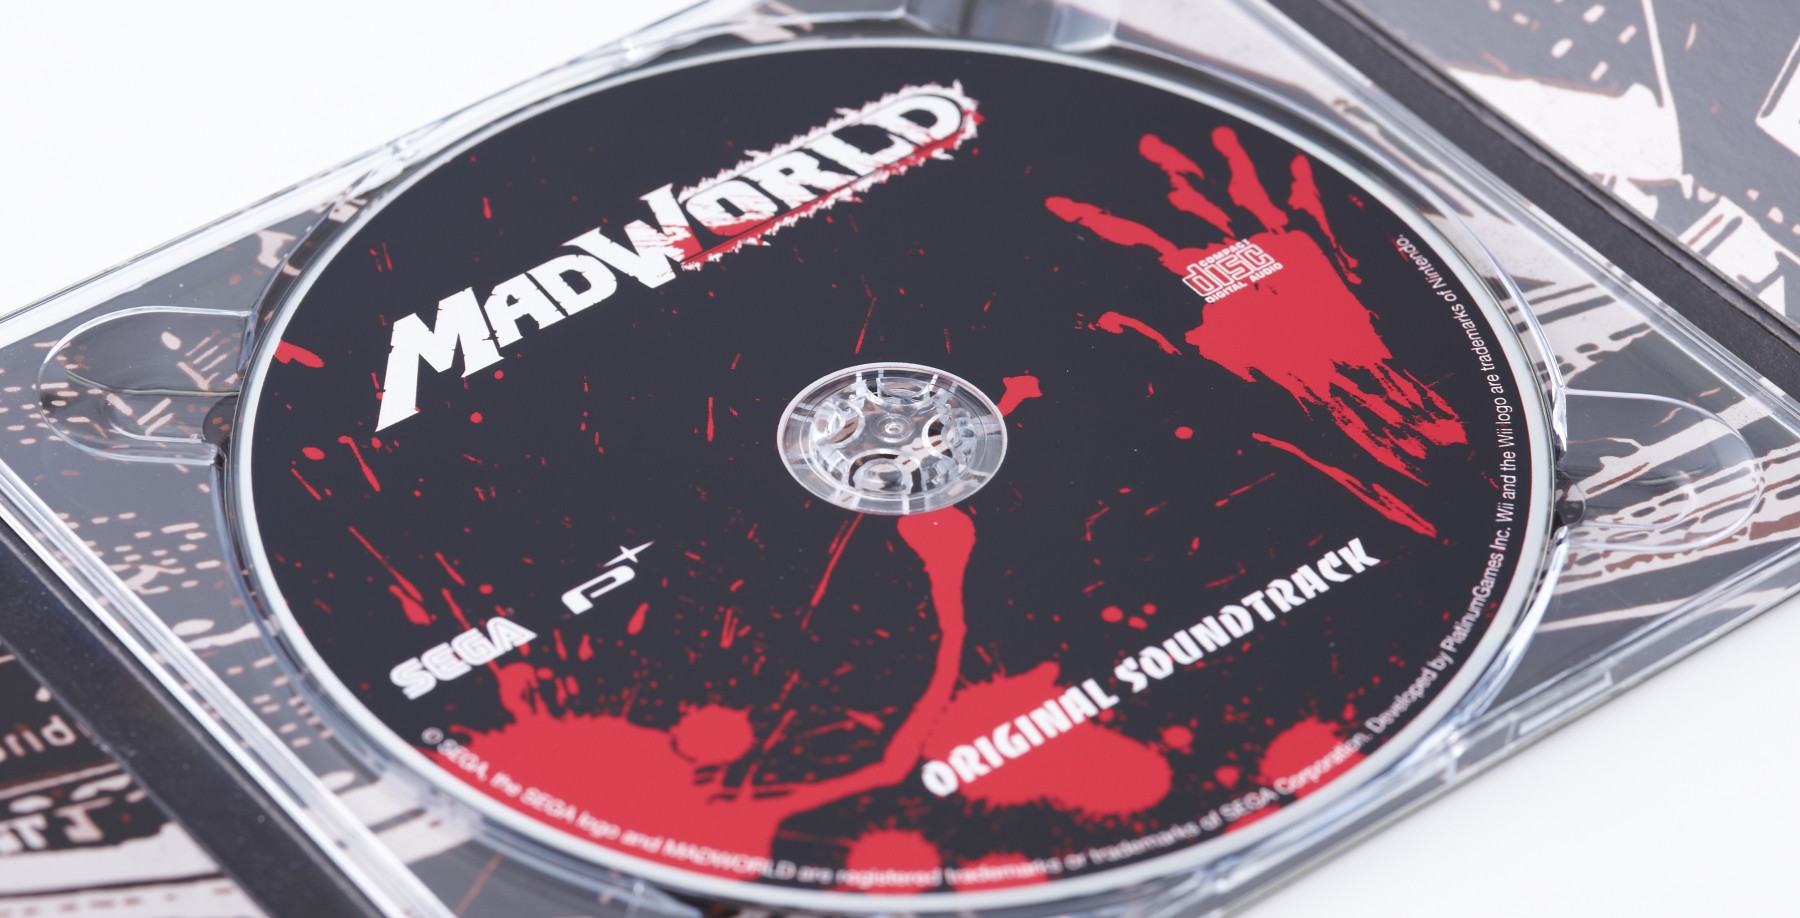 The MADWORLD Soundtrack  PlatinumGames Official Blog